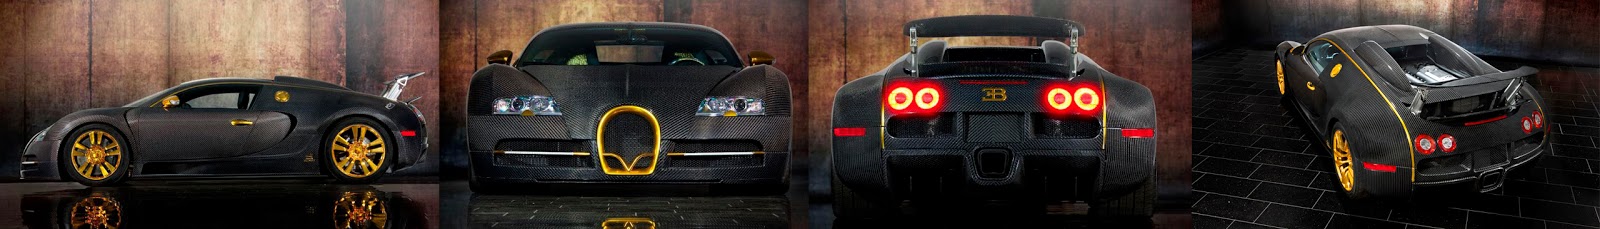 Imagen del lujoso Bugatti Veyron Vincerò